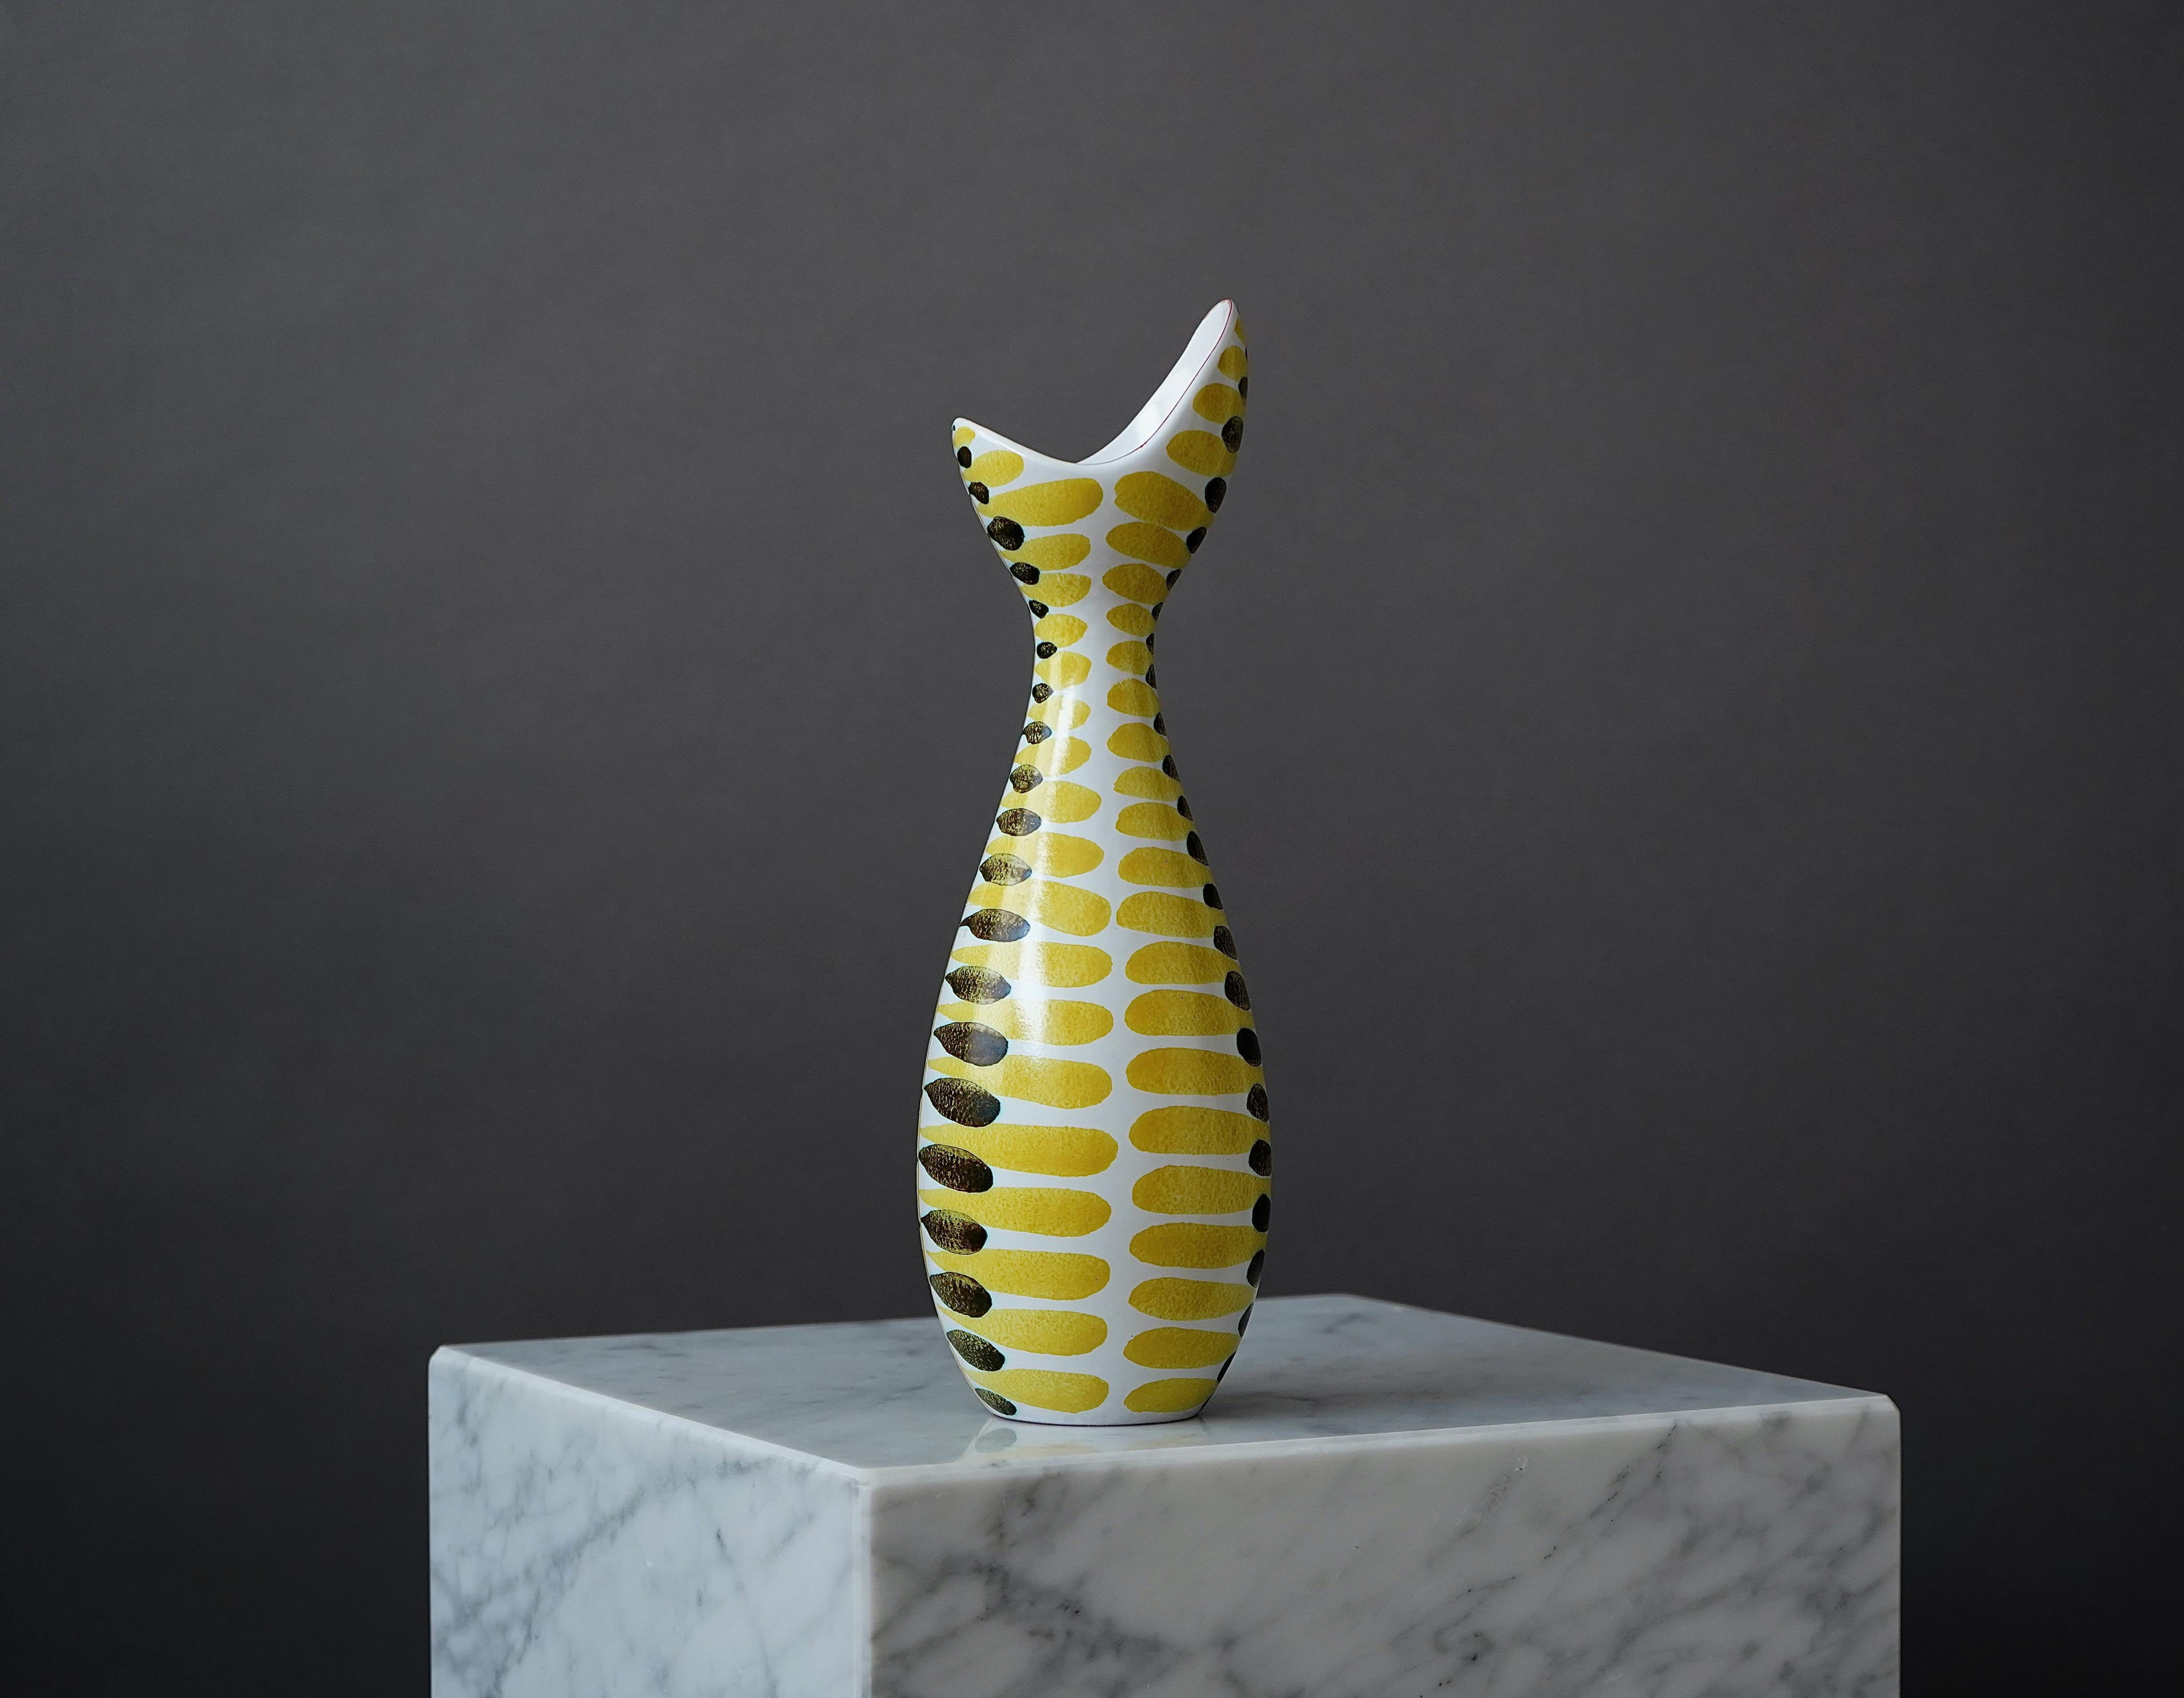 Eine schöne Fayence-Vase mit erstaunlichem geometrischem Muster.
Entworfen von Stig Lindberg im Gustavsberg Studio, Schweden, 1950er Jahre.

Ausgezeichneter Zustand.
Signiert mit der Hand des Studios Gustavsberg.

Stig Lindberg und Gustavsbergs